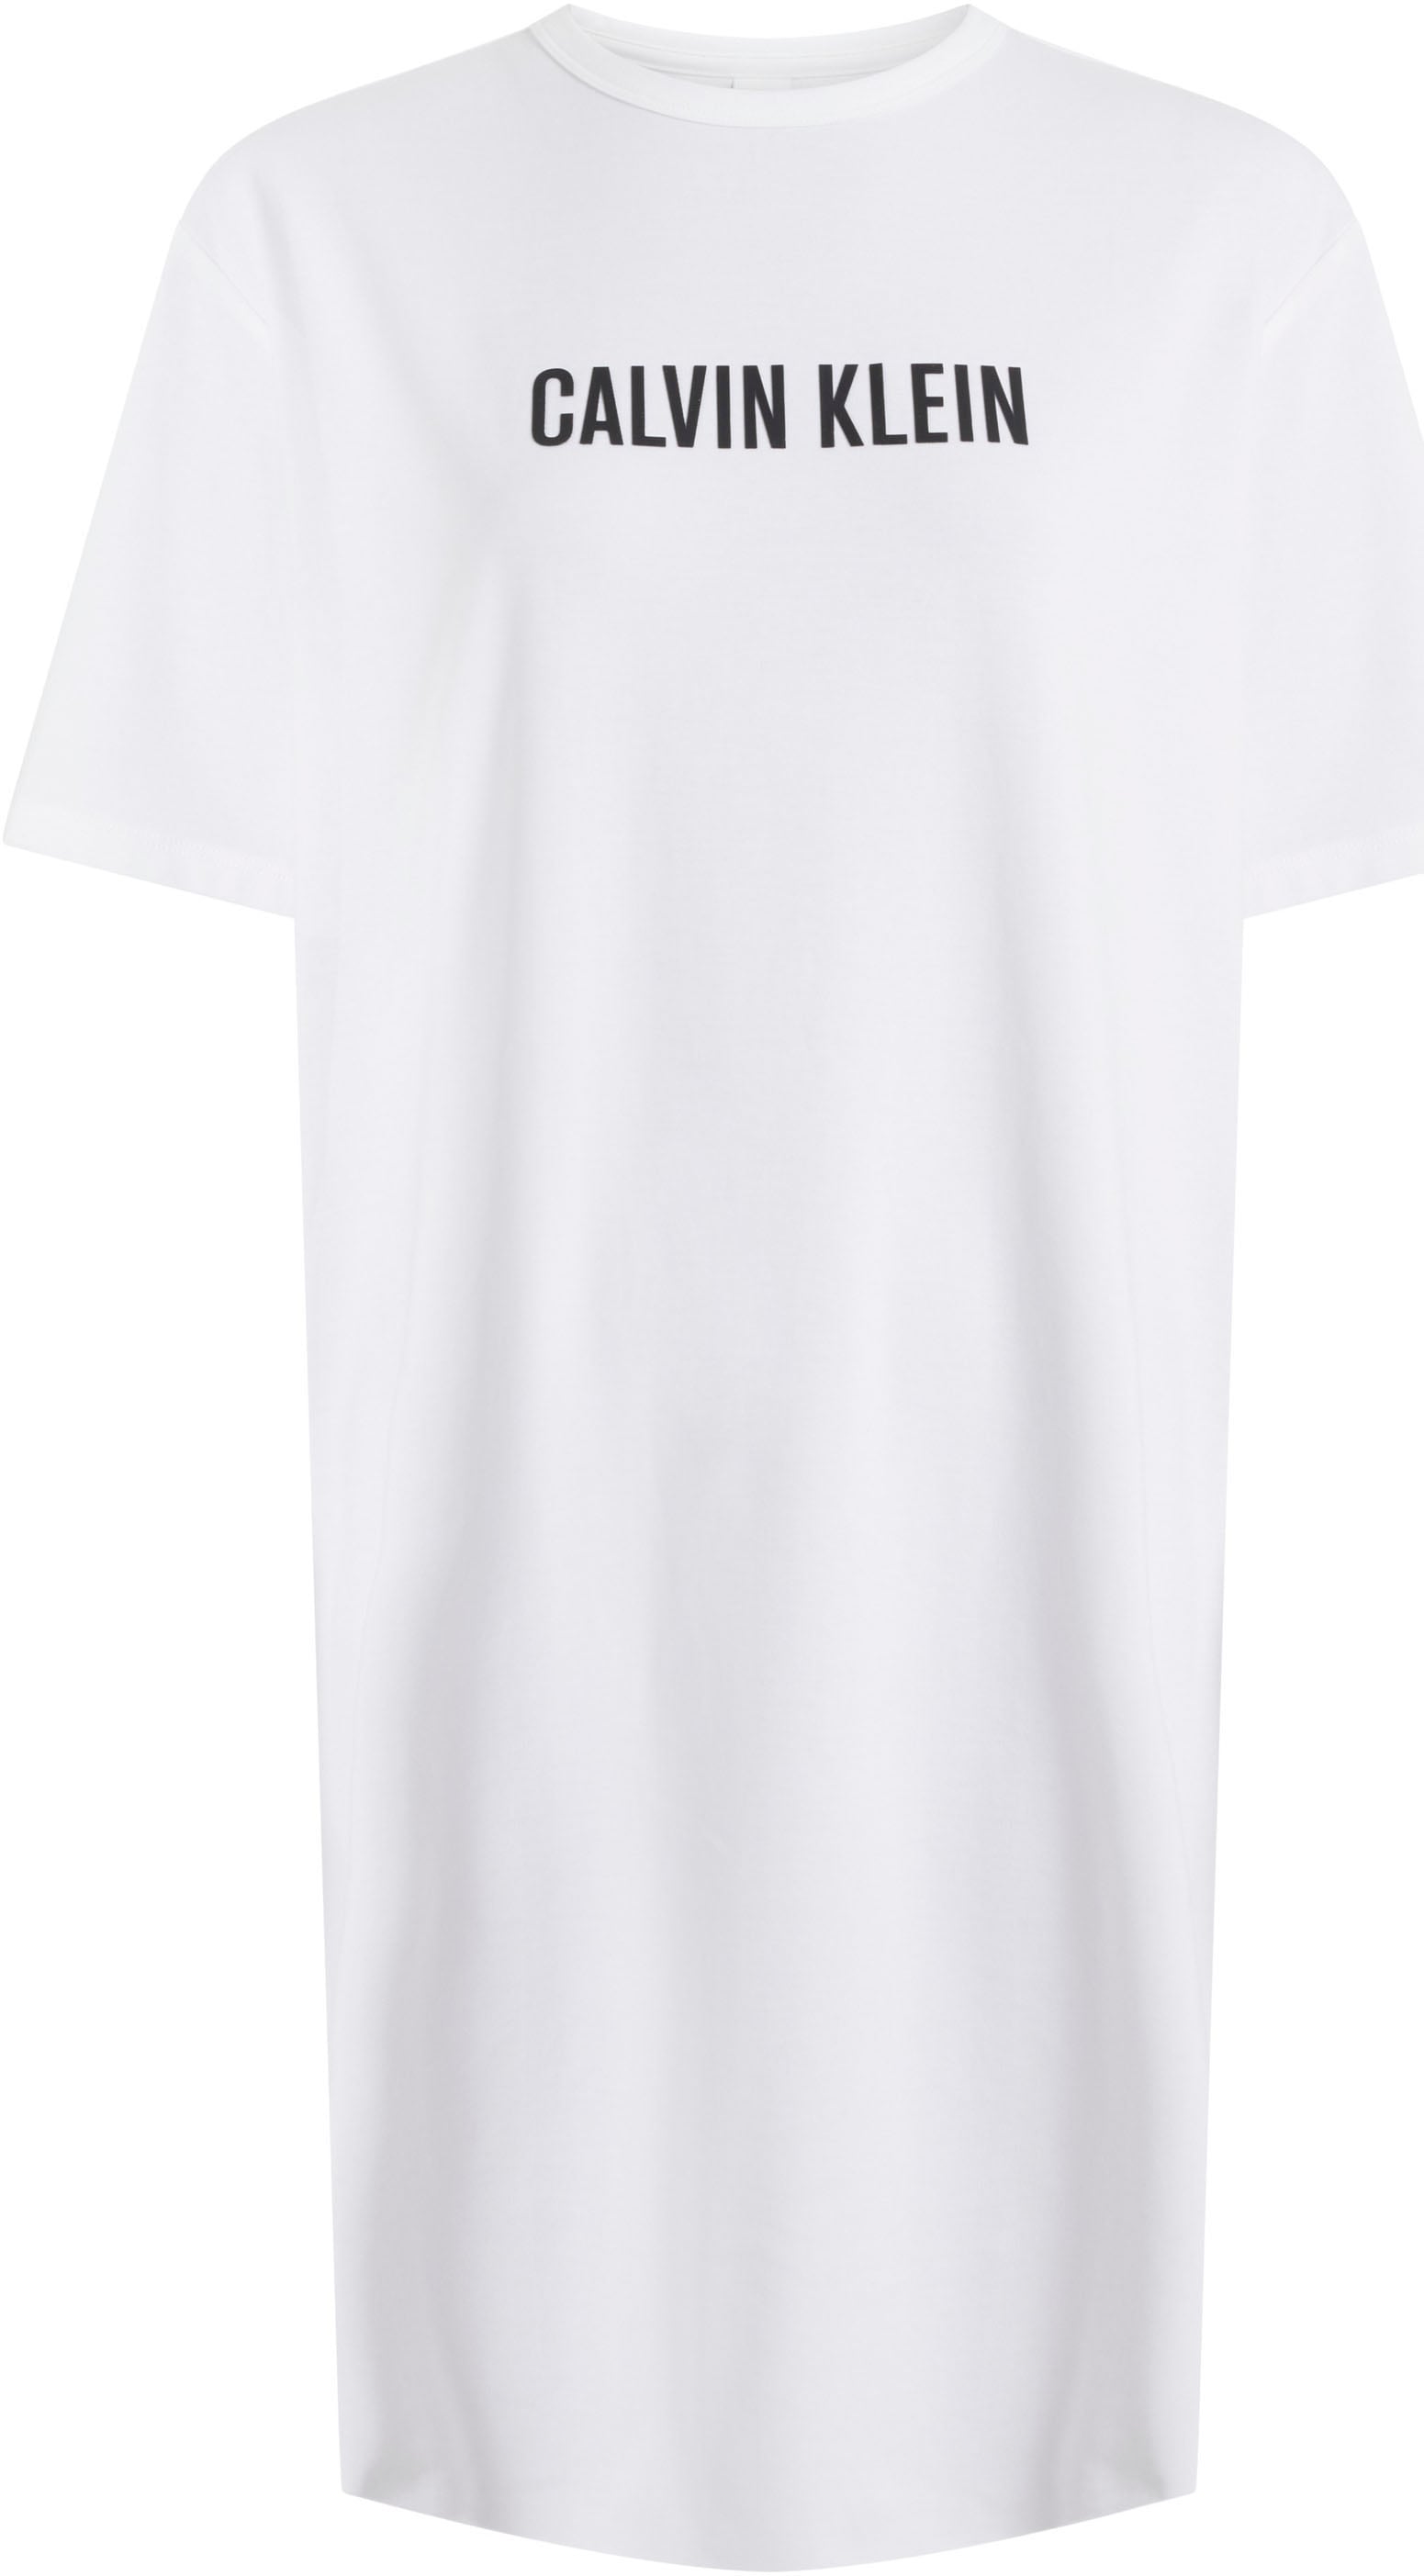 auf ▷ »S/S Nachthemd BAUR für Brust der | NIGHTSHIRT«, Klein mit Calvin Logoschriftzug